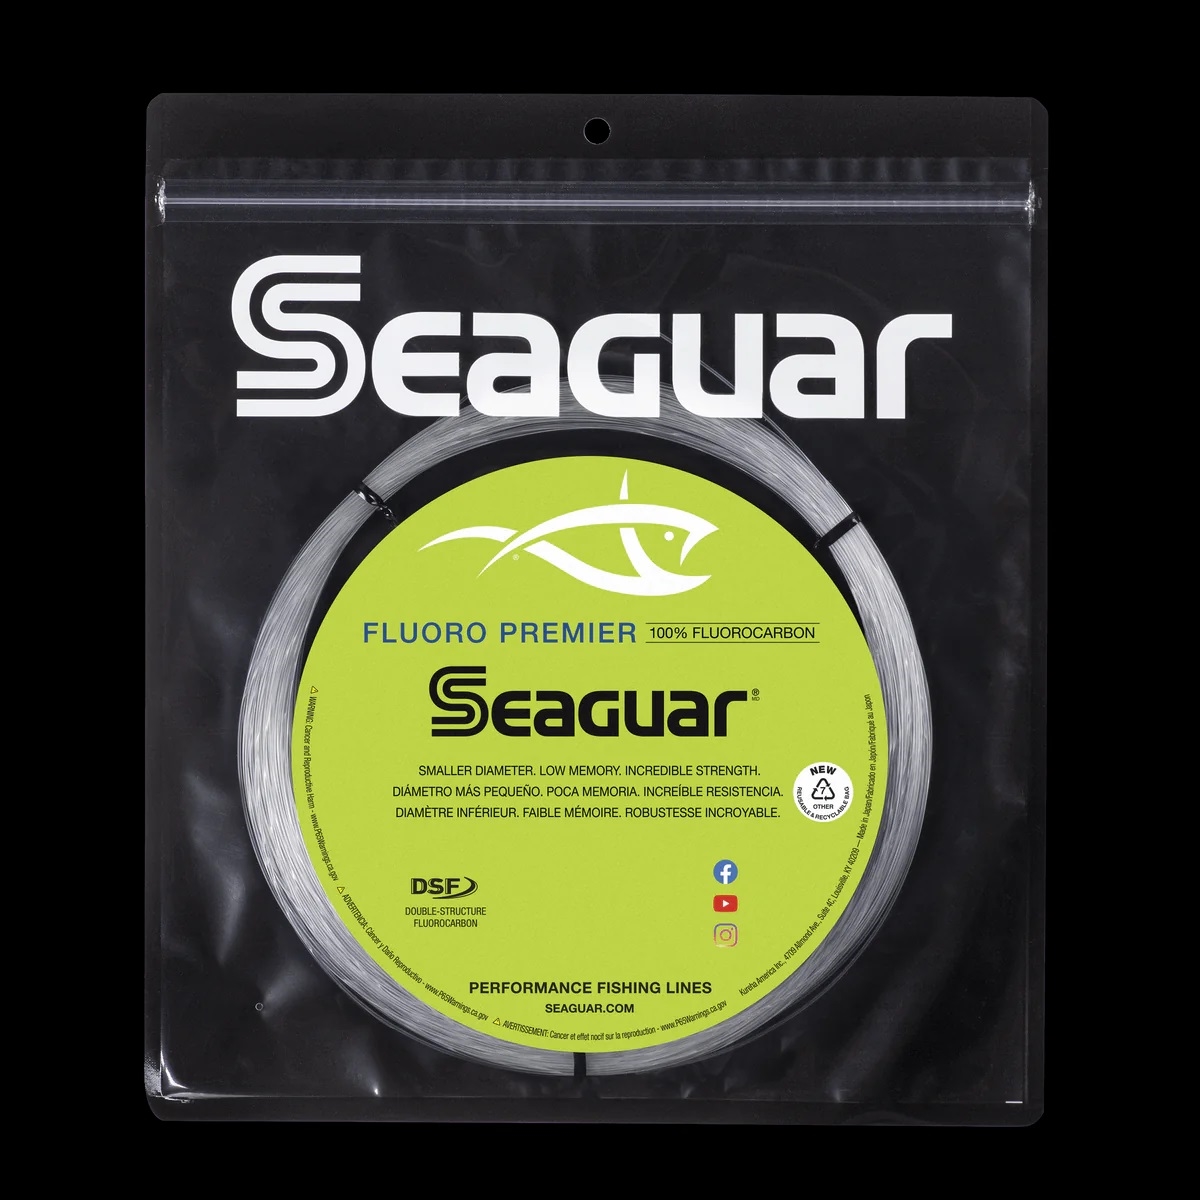 Seaguar Premier Fluorocarbon Fishing Line